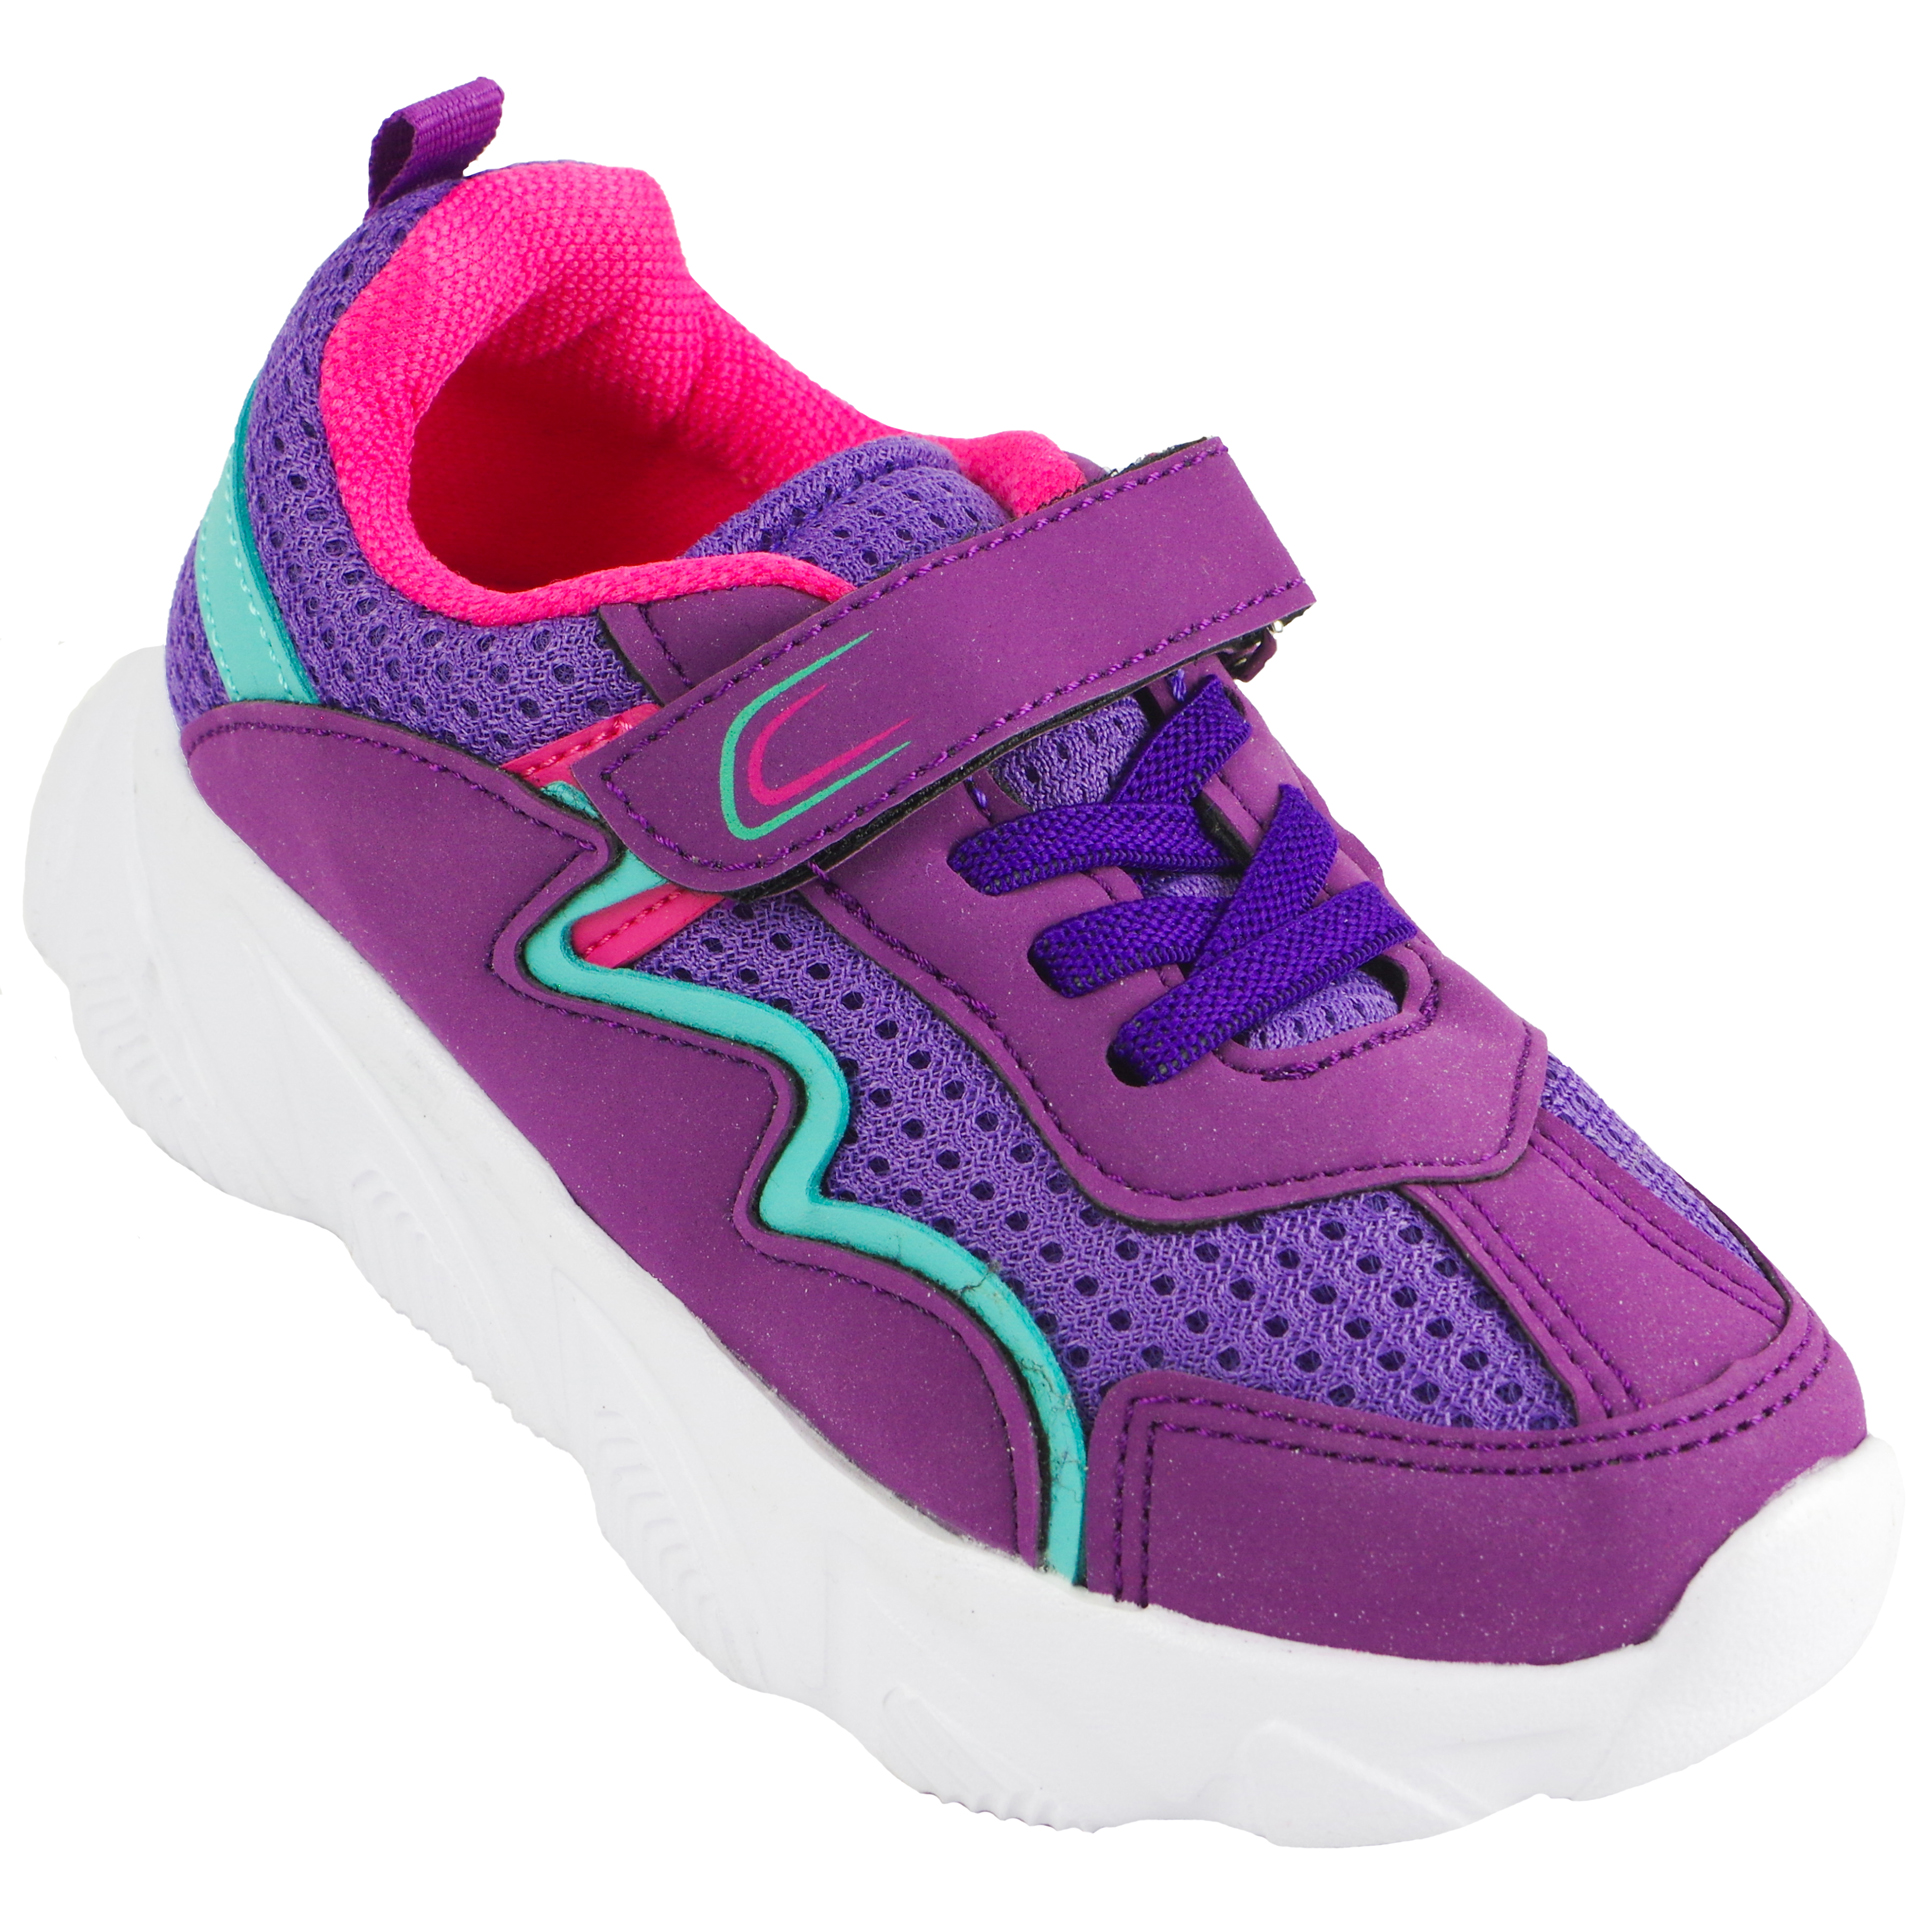 Кросівки для дівчат (2030) для дівчинки, матеріал Текстиль, Фіолетовий колір, 26-30 розміри – Sole Kids